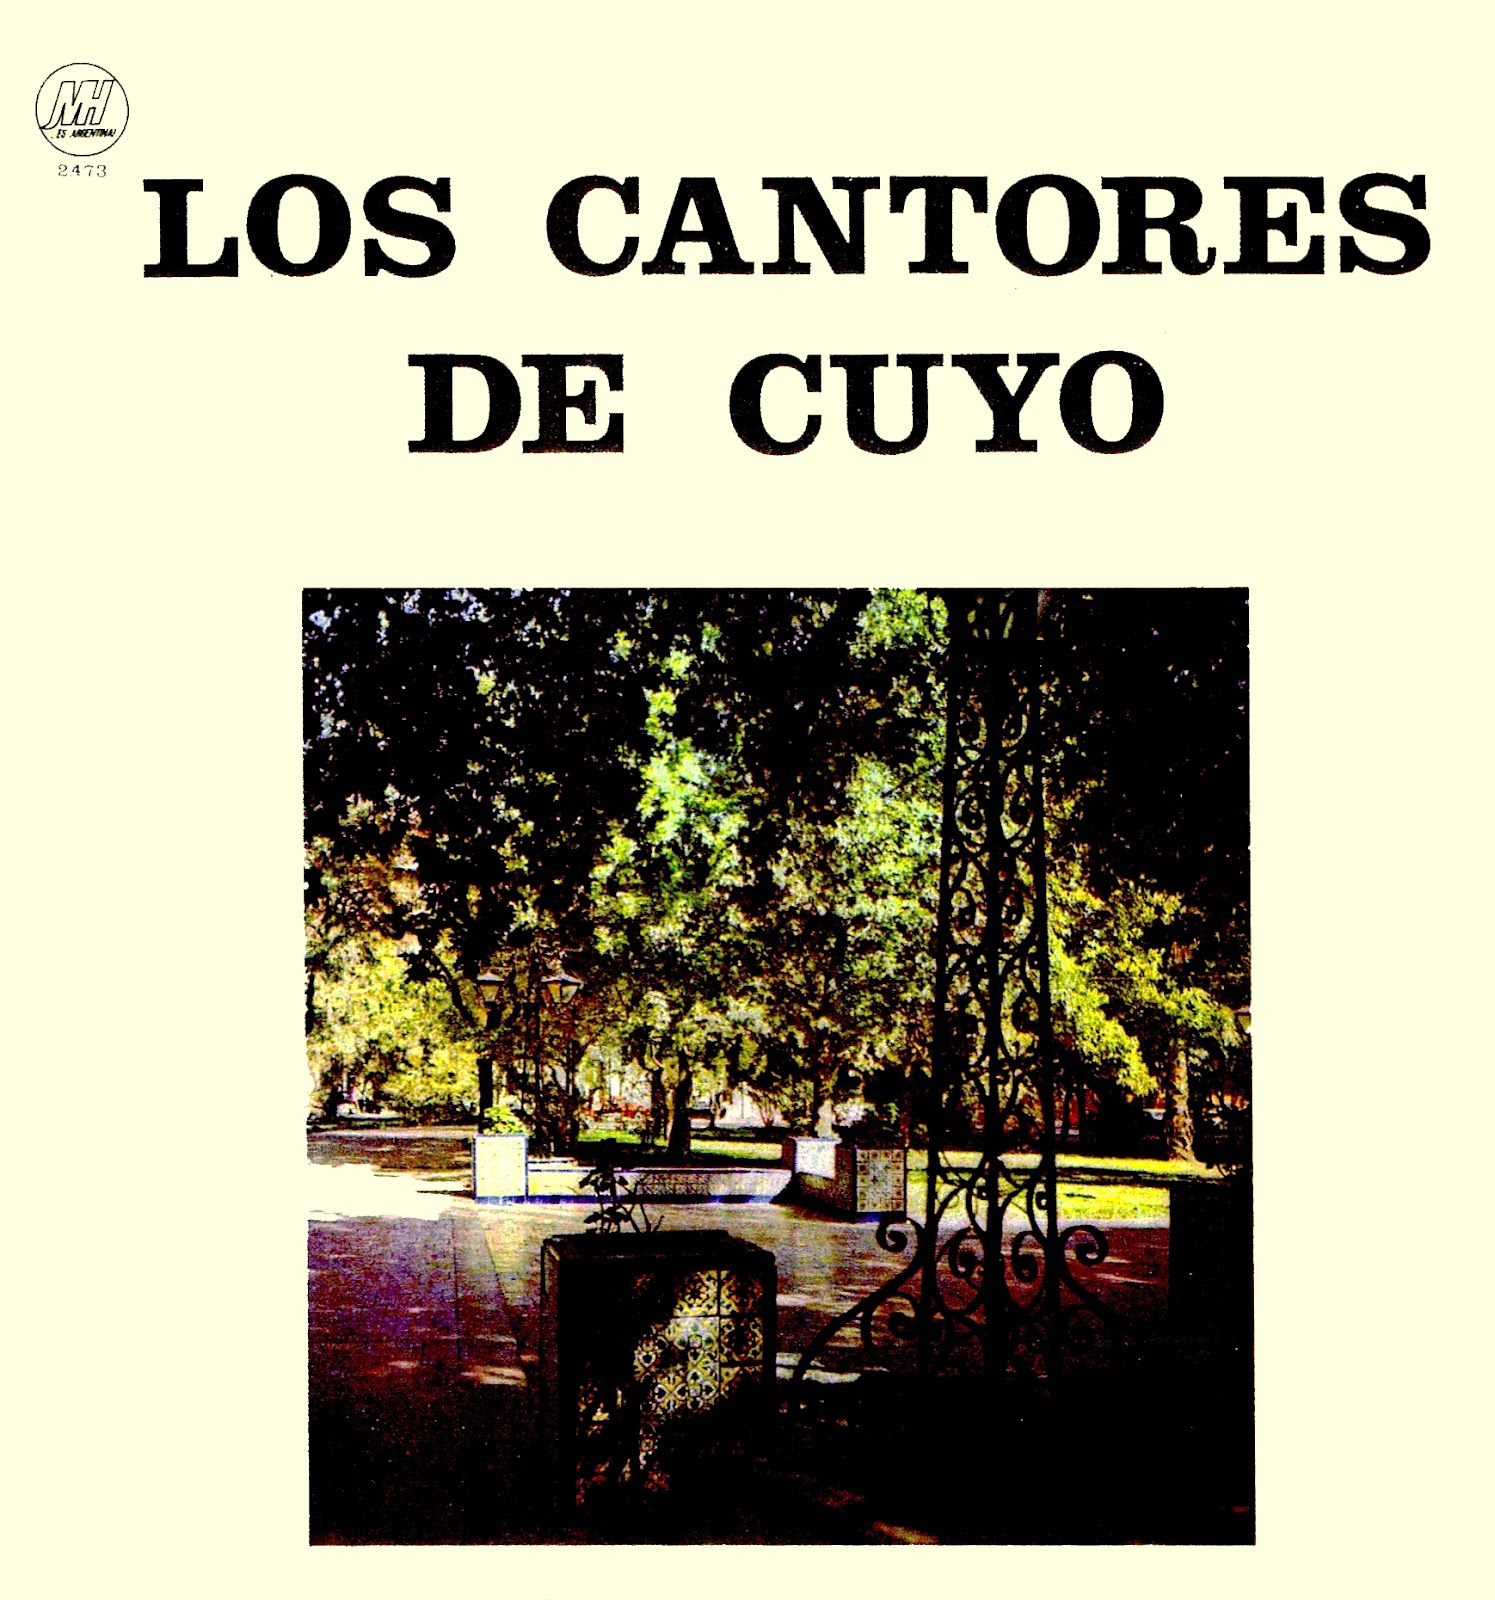 Los Cantores de Cuyo